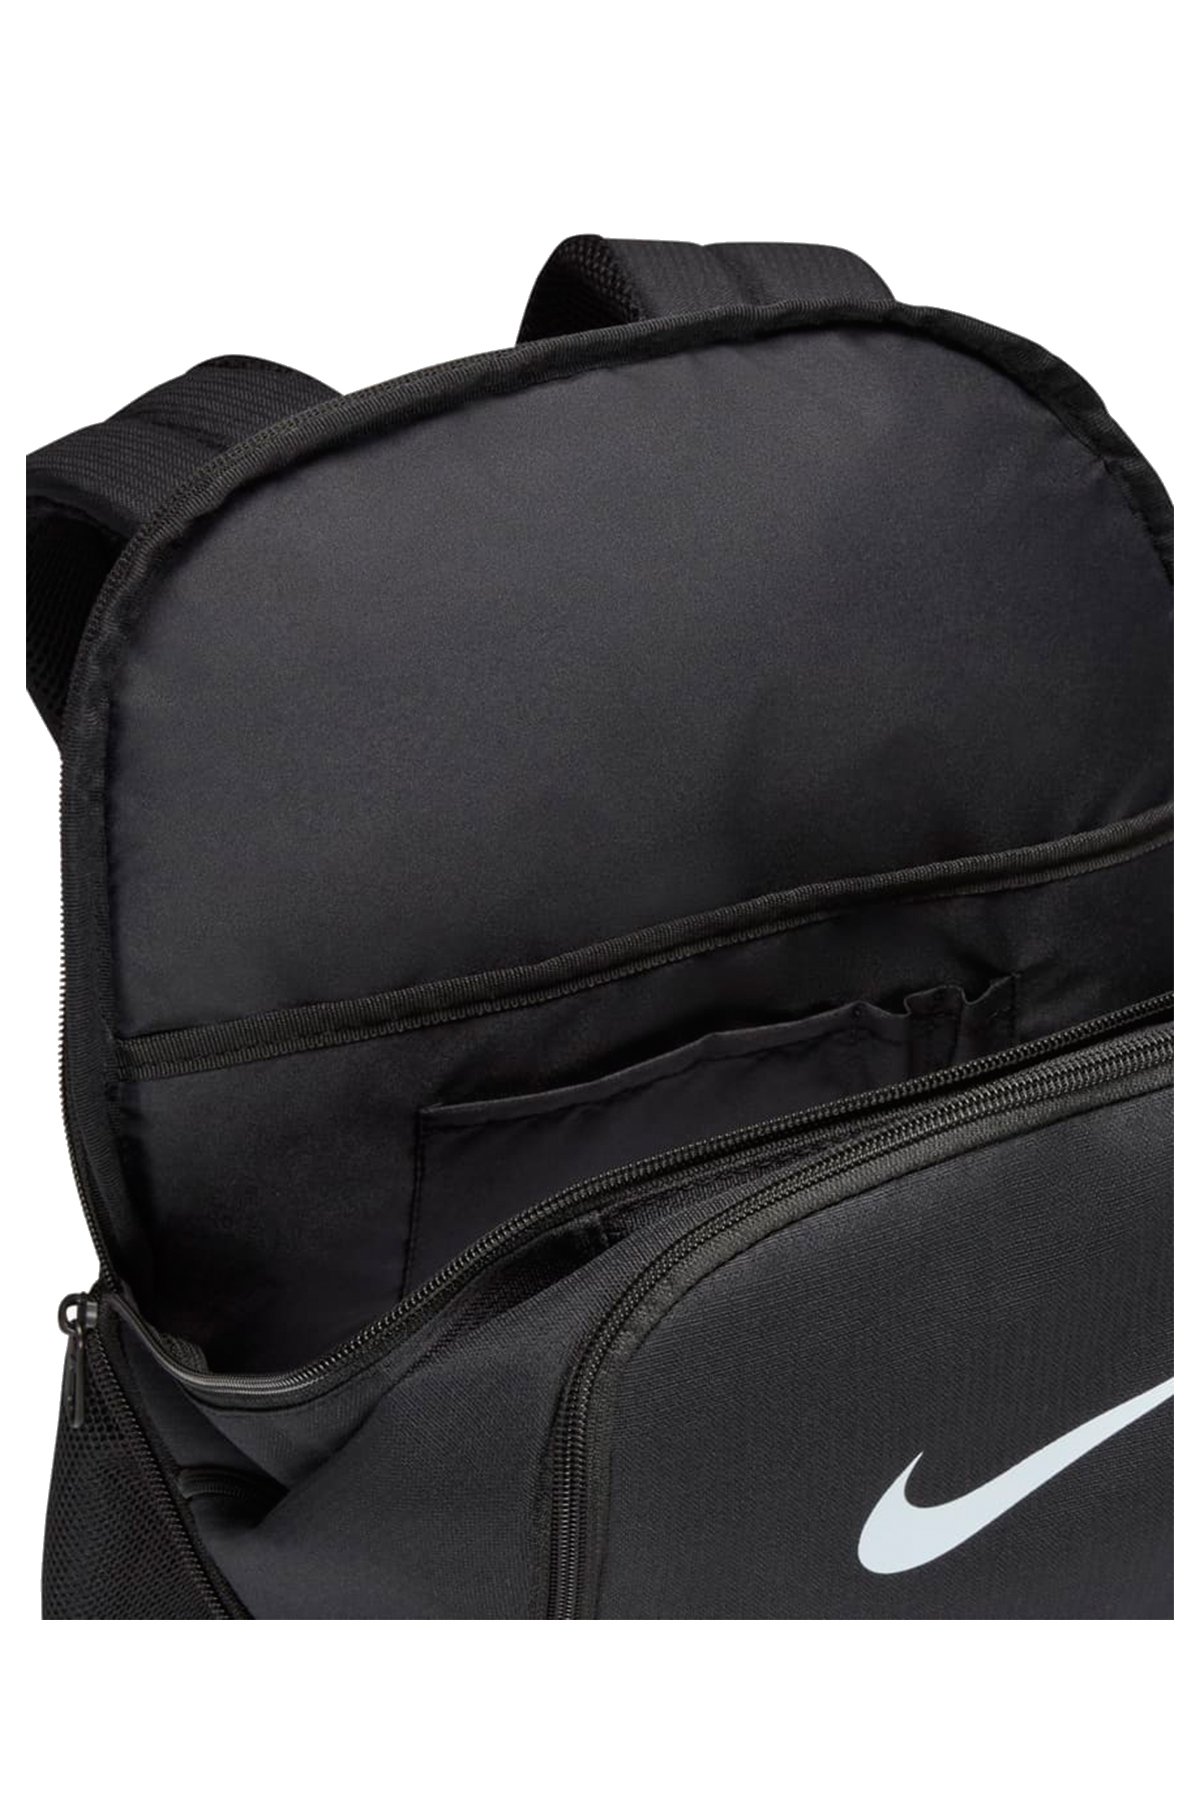 Nike Brasilia 9.5 Sırt Çantası Dh7709-010